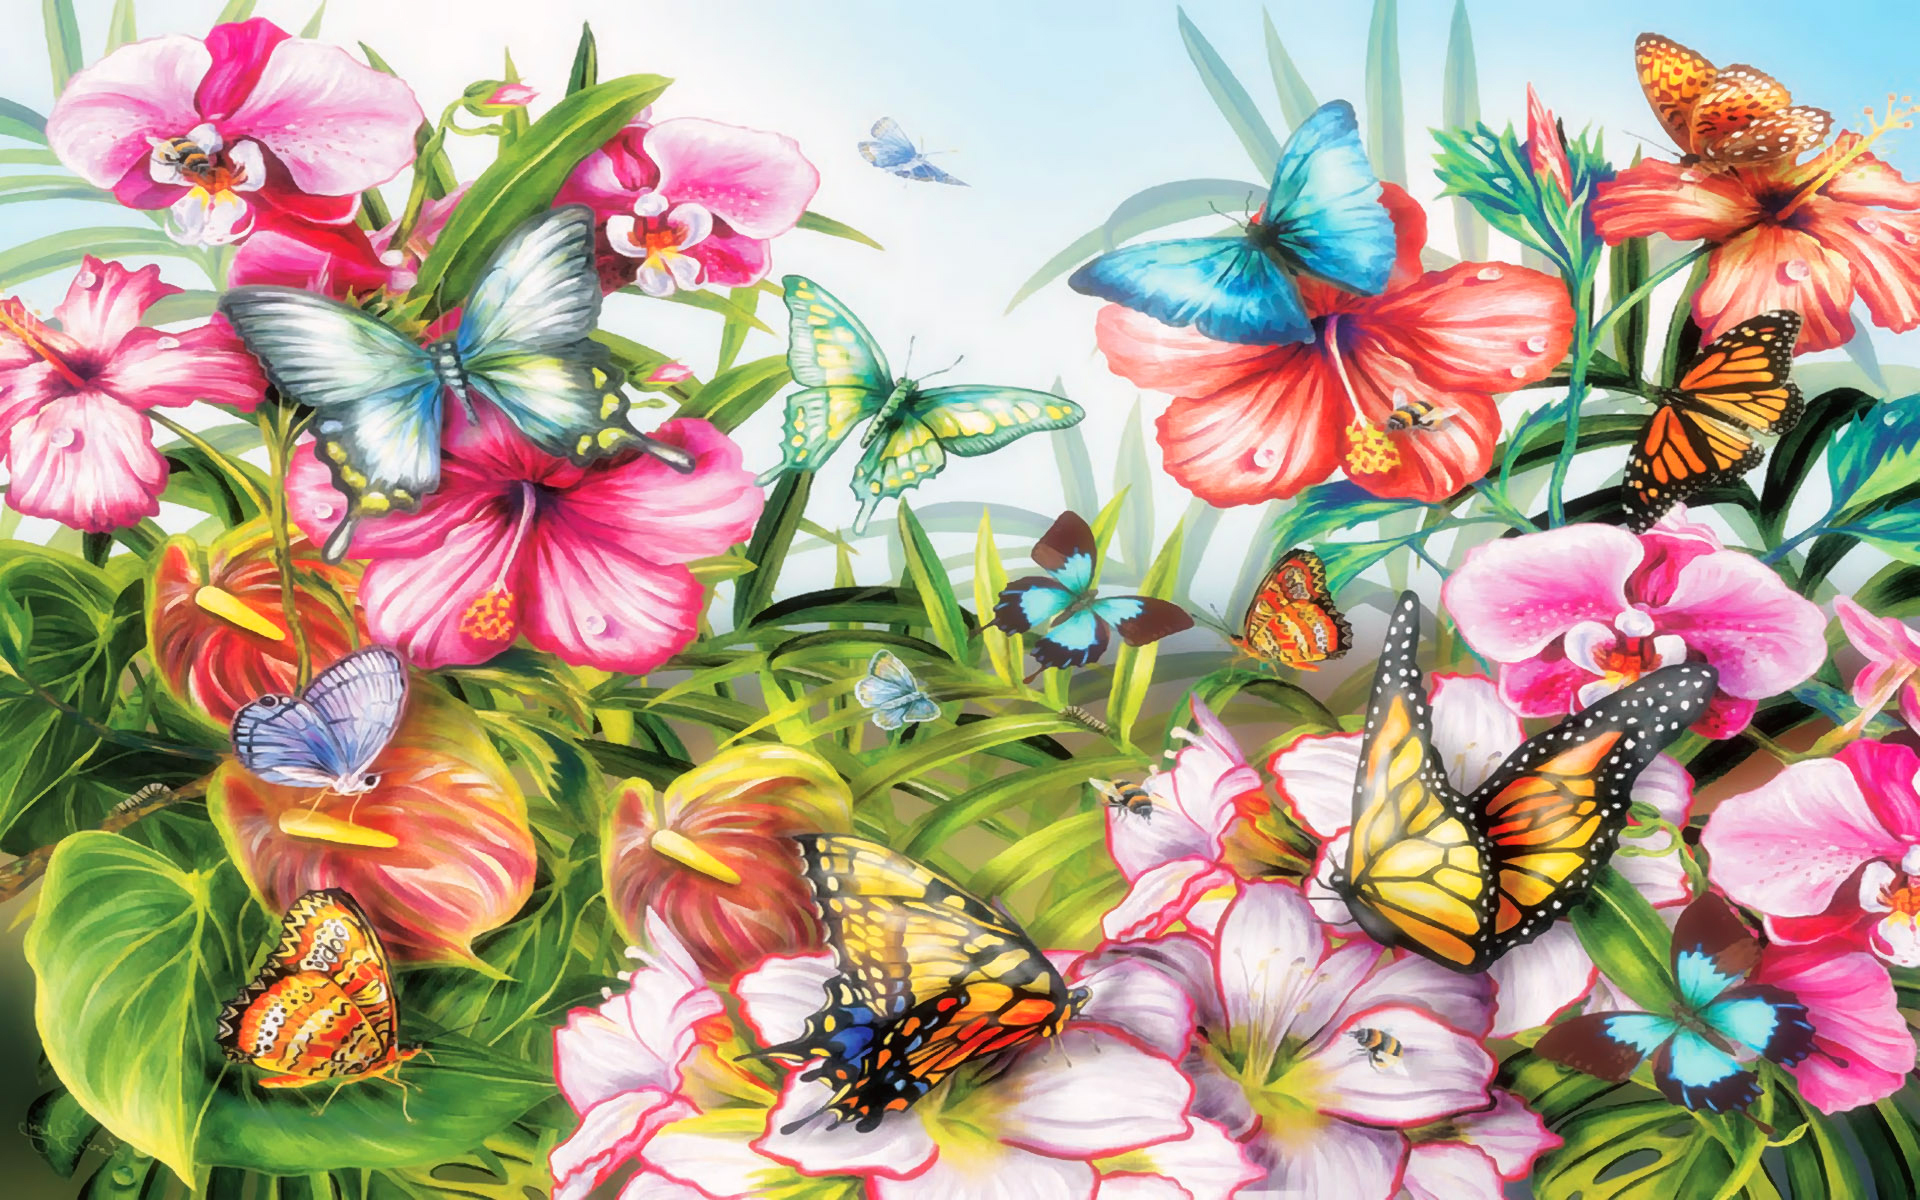 Скачать обои бесплатно Цветок, Бабочка, Весна, Художественные картинка на рабочий стол ПК